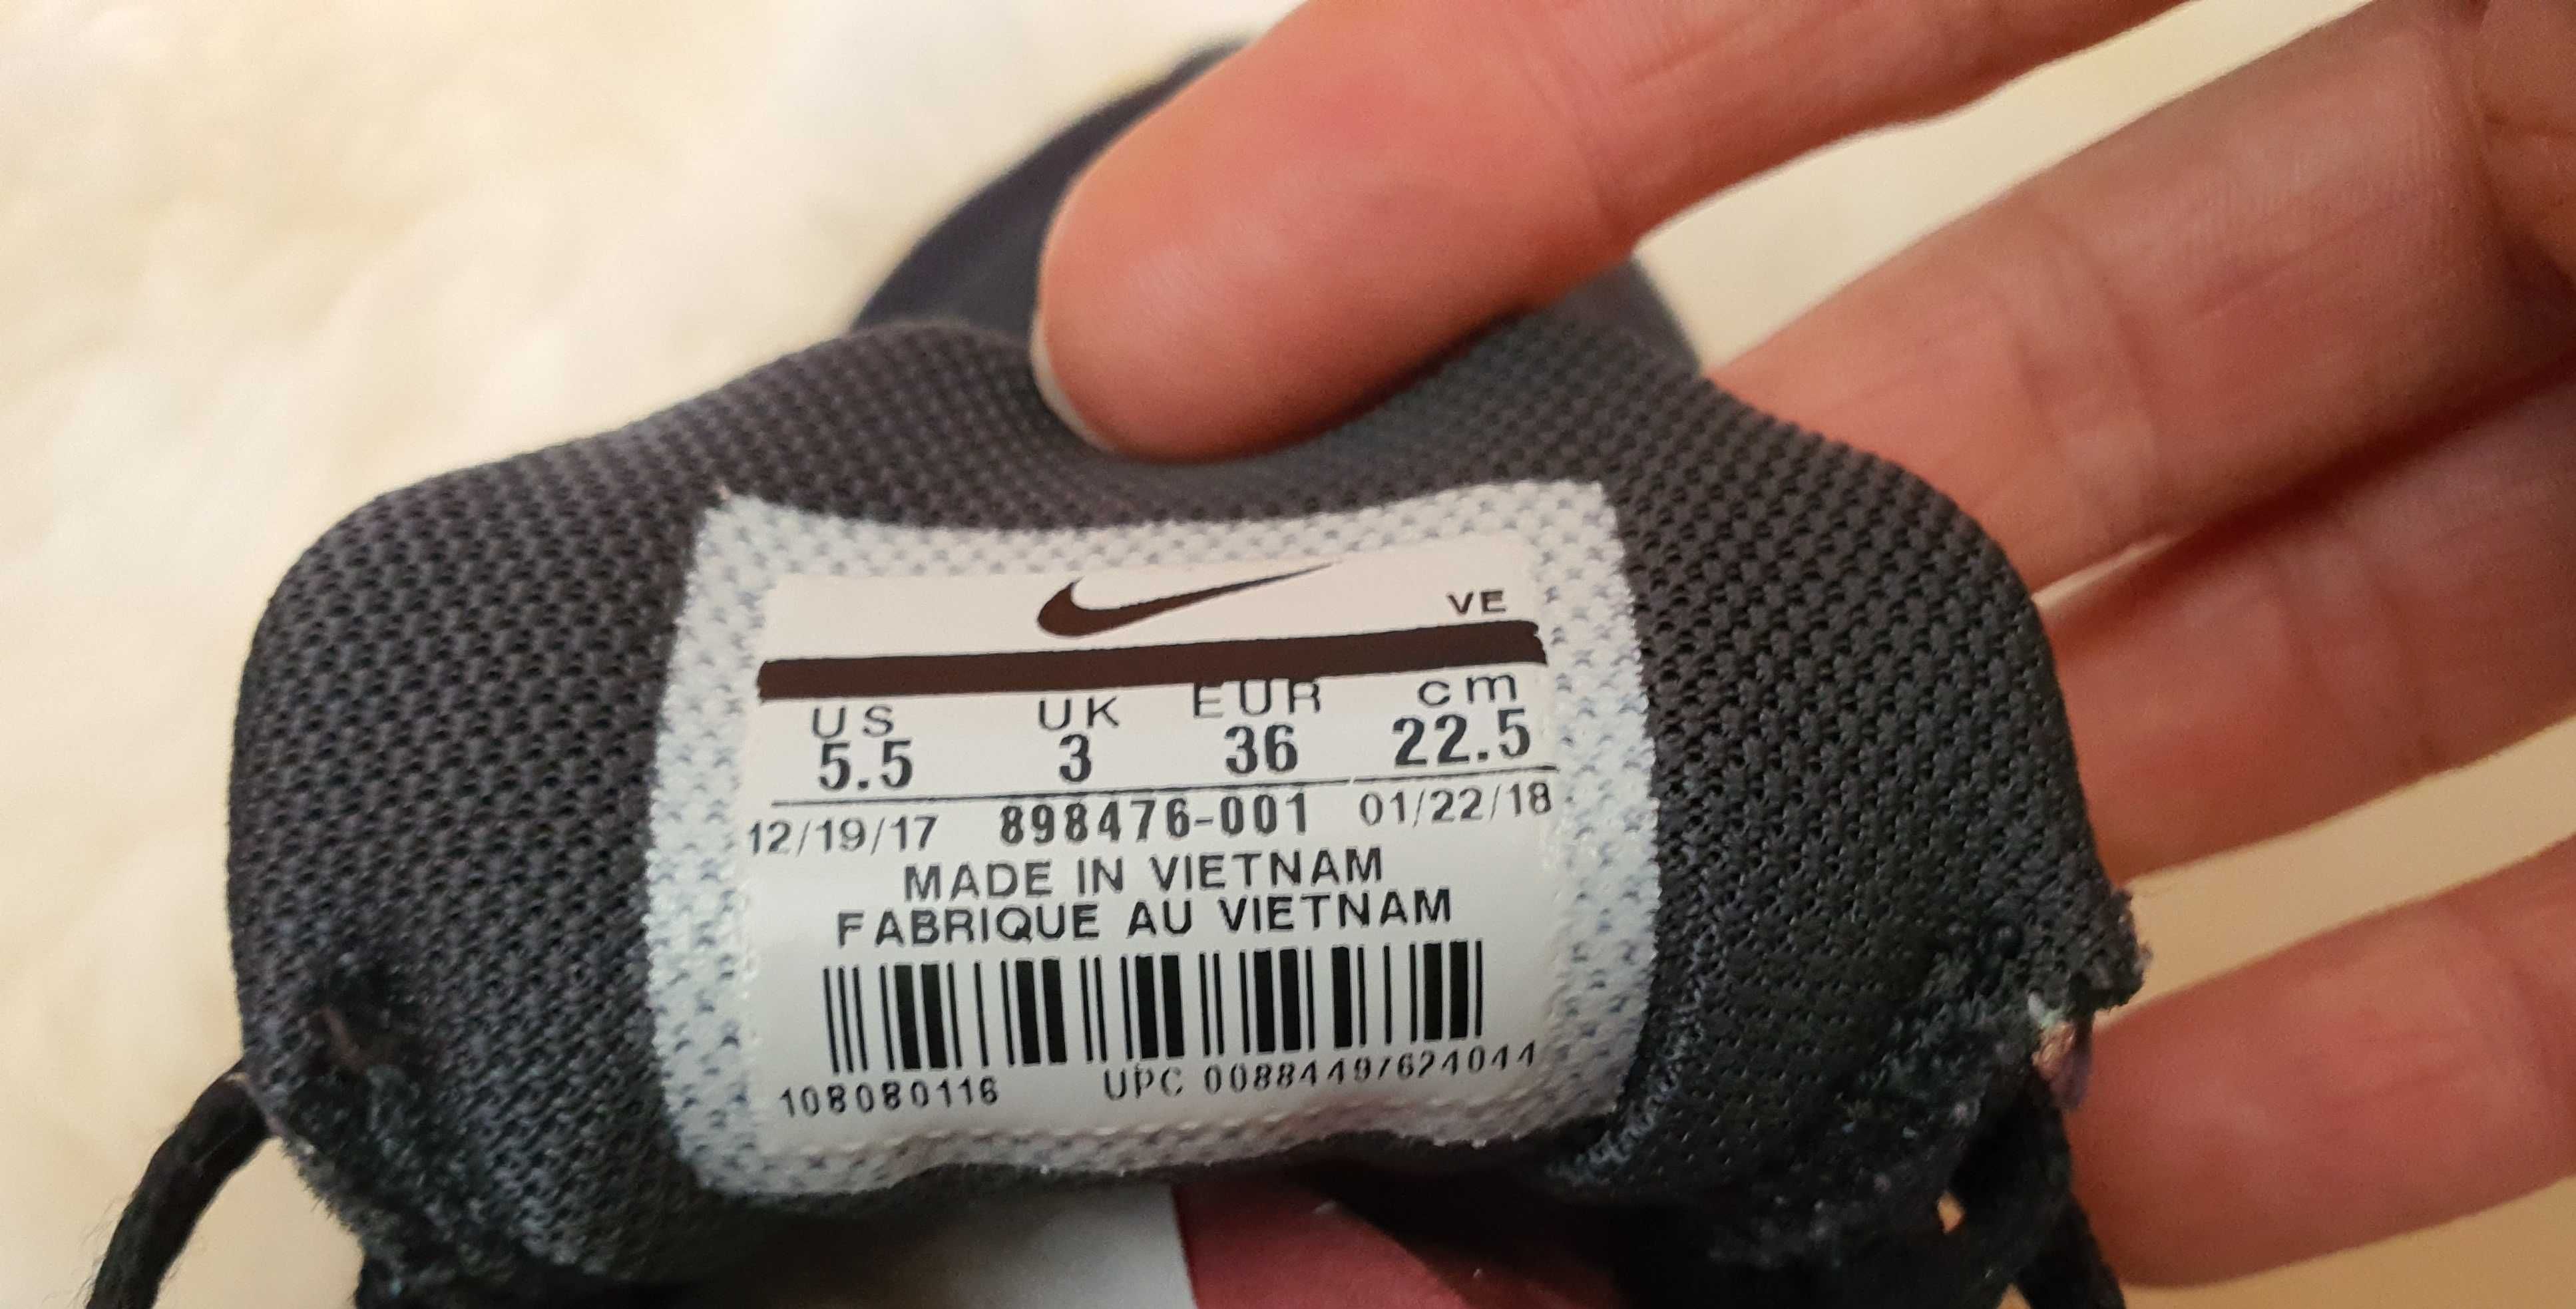 Adidasi Nike  Flex  Run copii marimea 36 eur